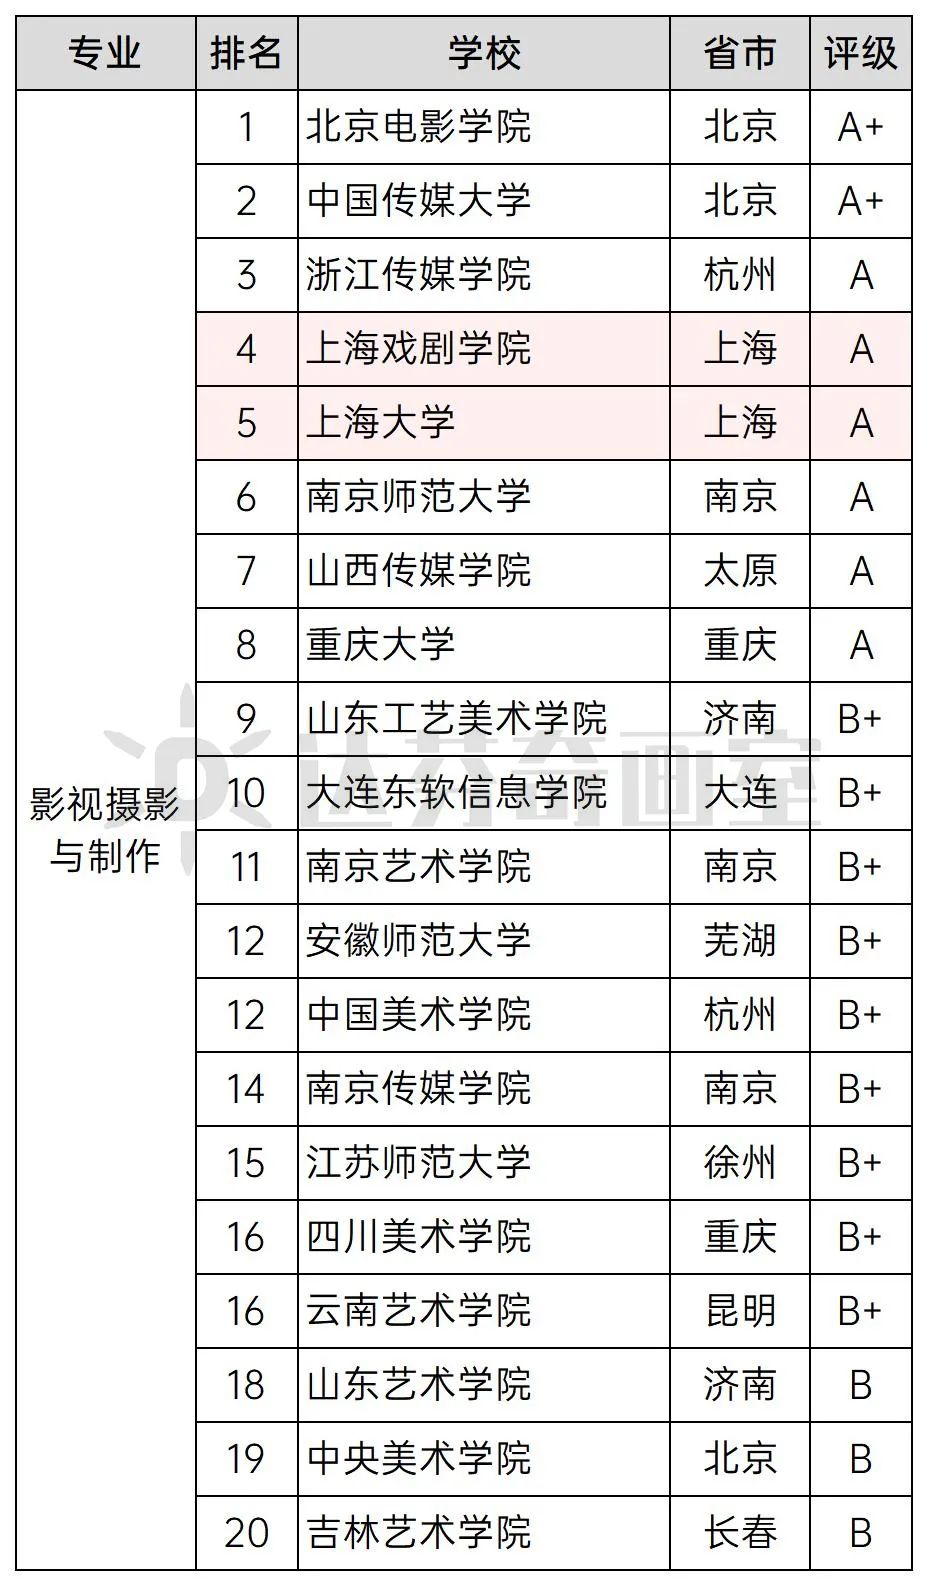 影视摄影与制作：上海戏剧学院排名第4，A；上海大学排名第５，A